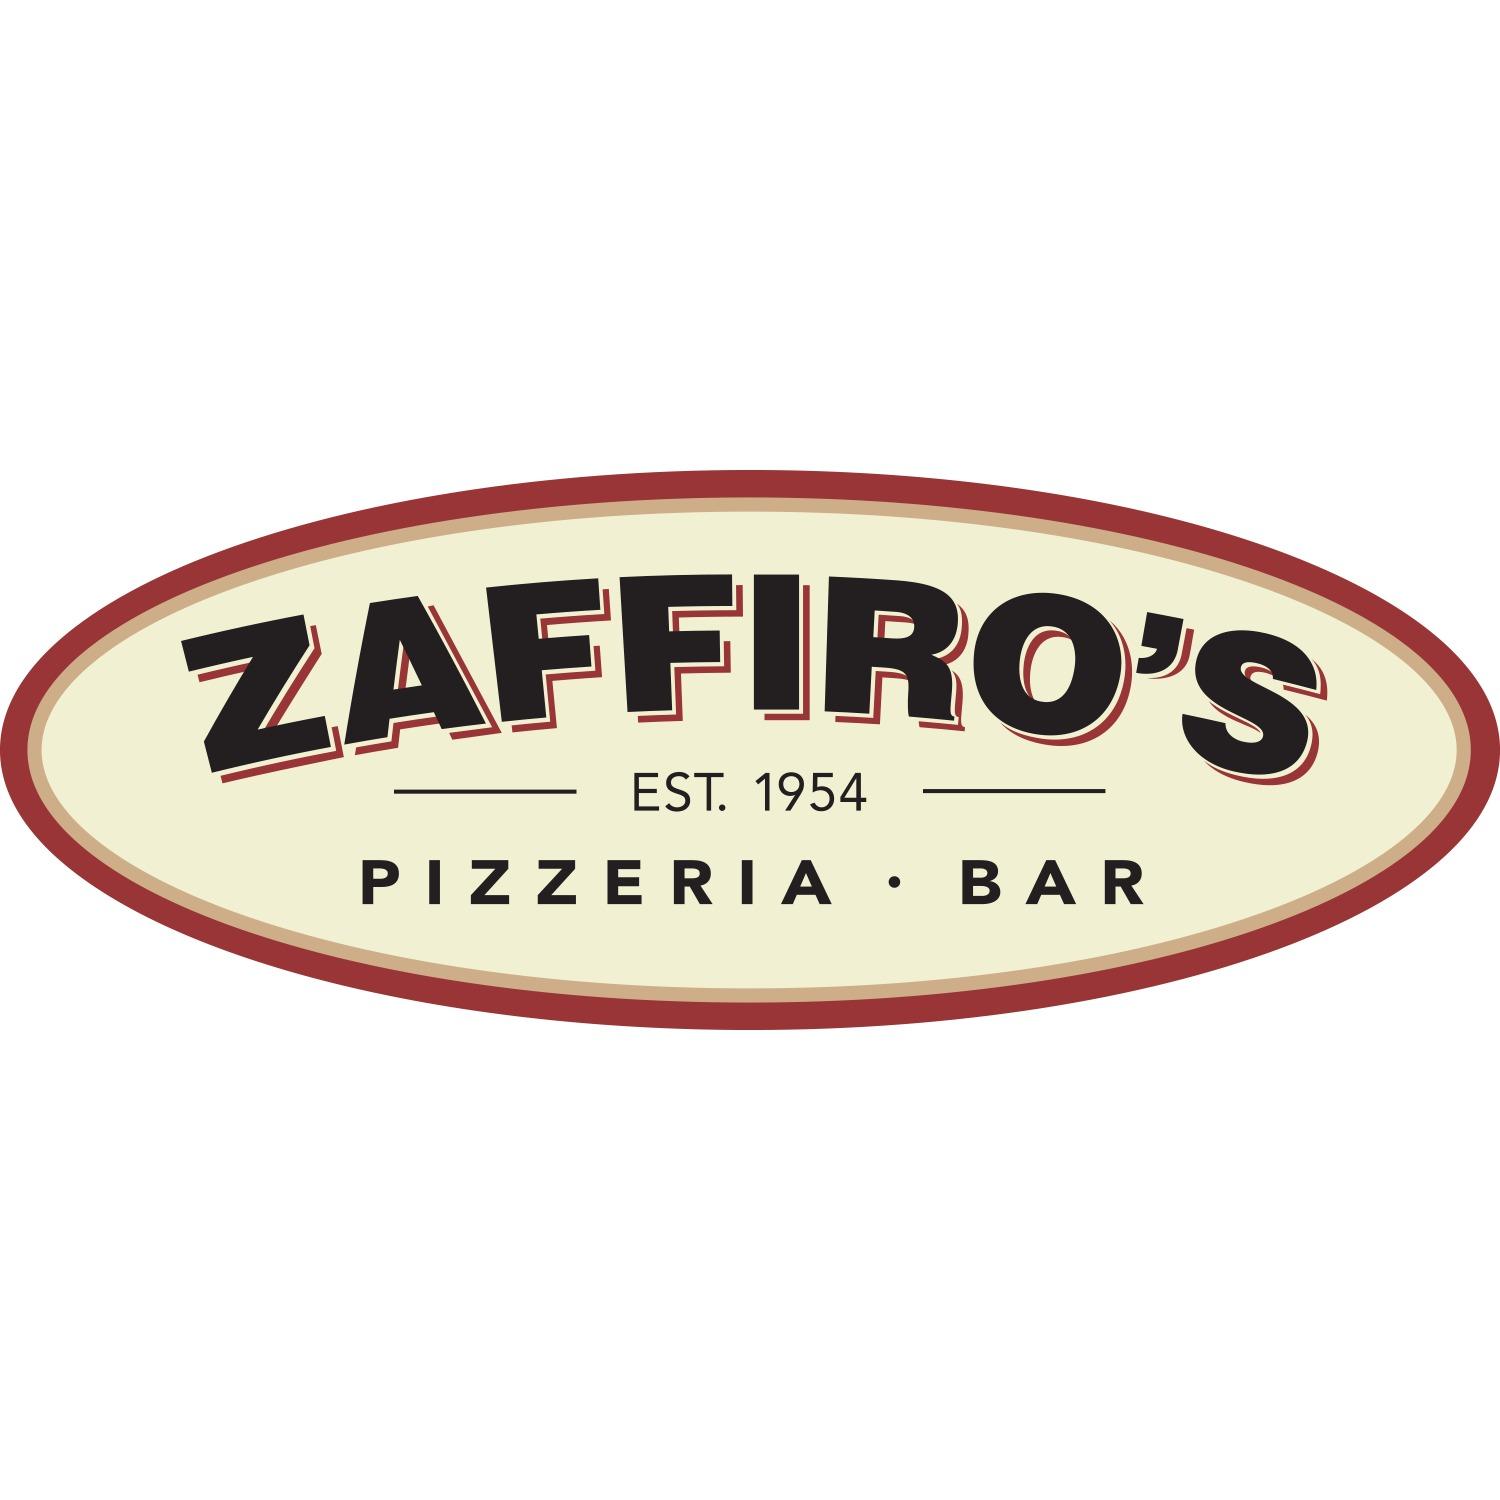 Zaffiro's Pizzeria - Parkwood Logo